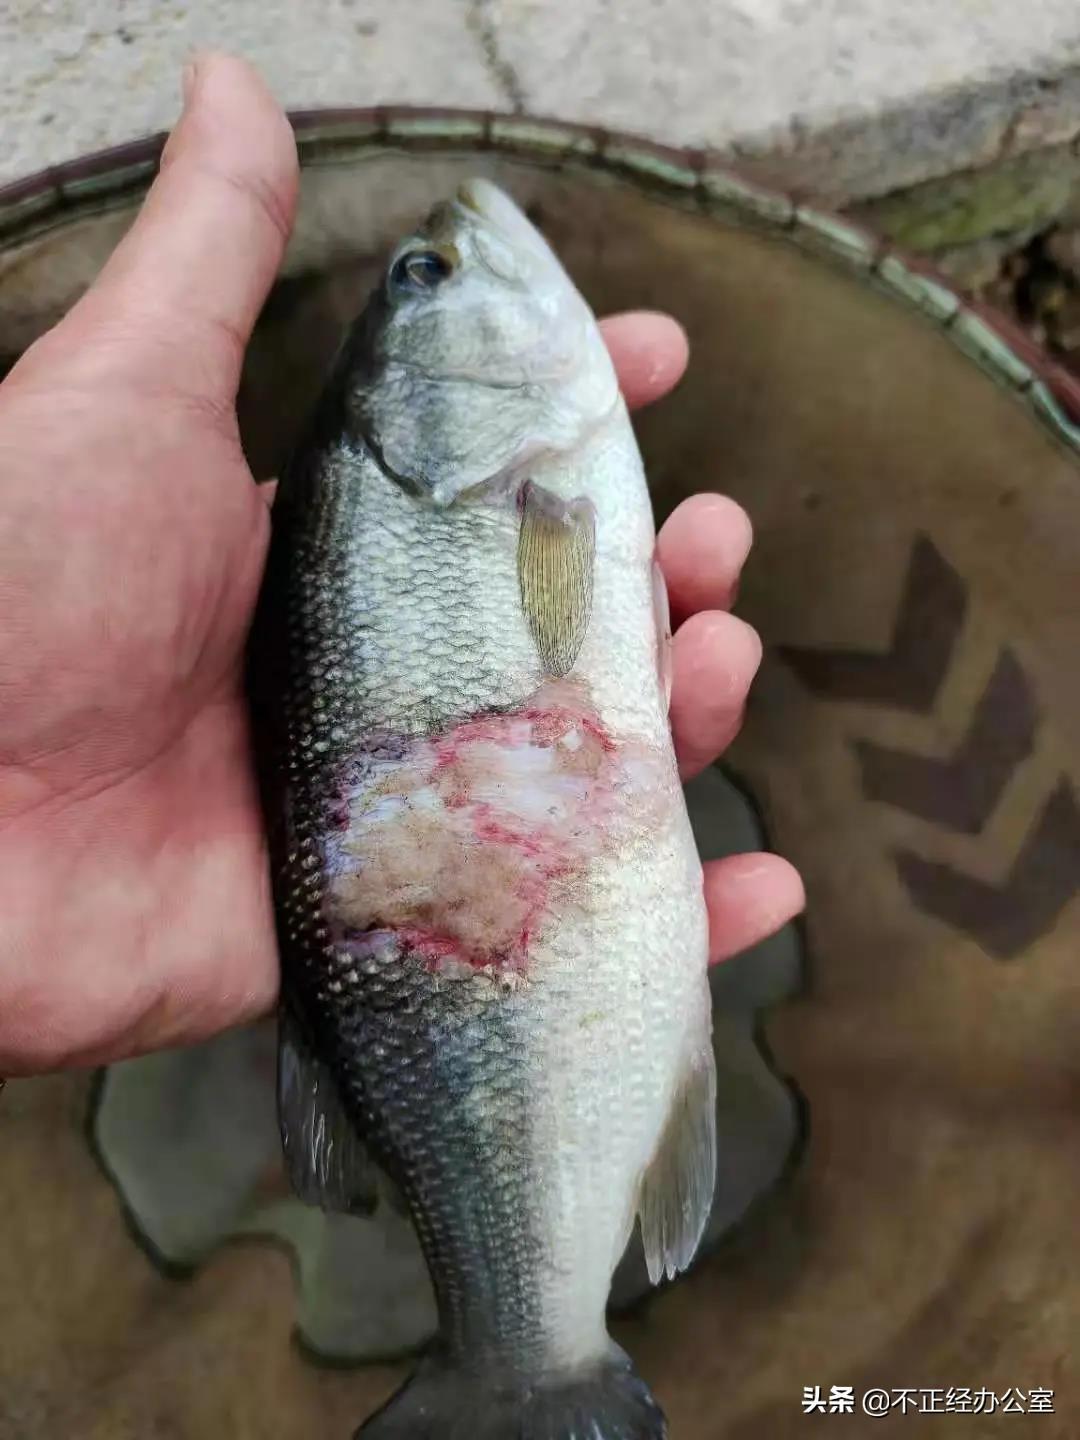 养殖户在过塘时,加州鲈鱼体受到损伤,导致继发性细菌感染引起加州鲈烂